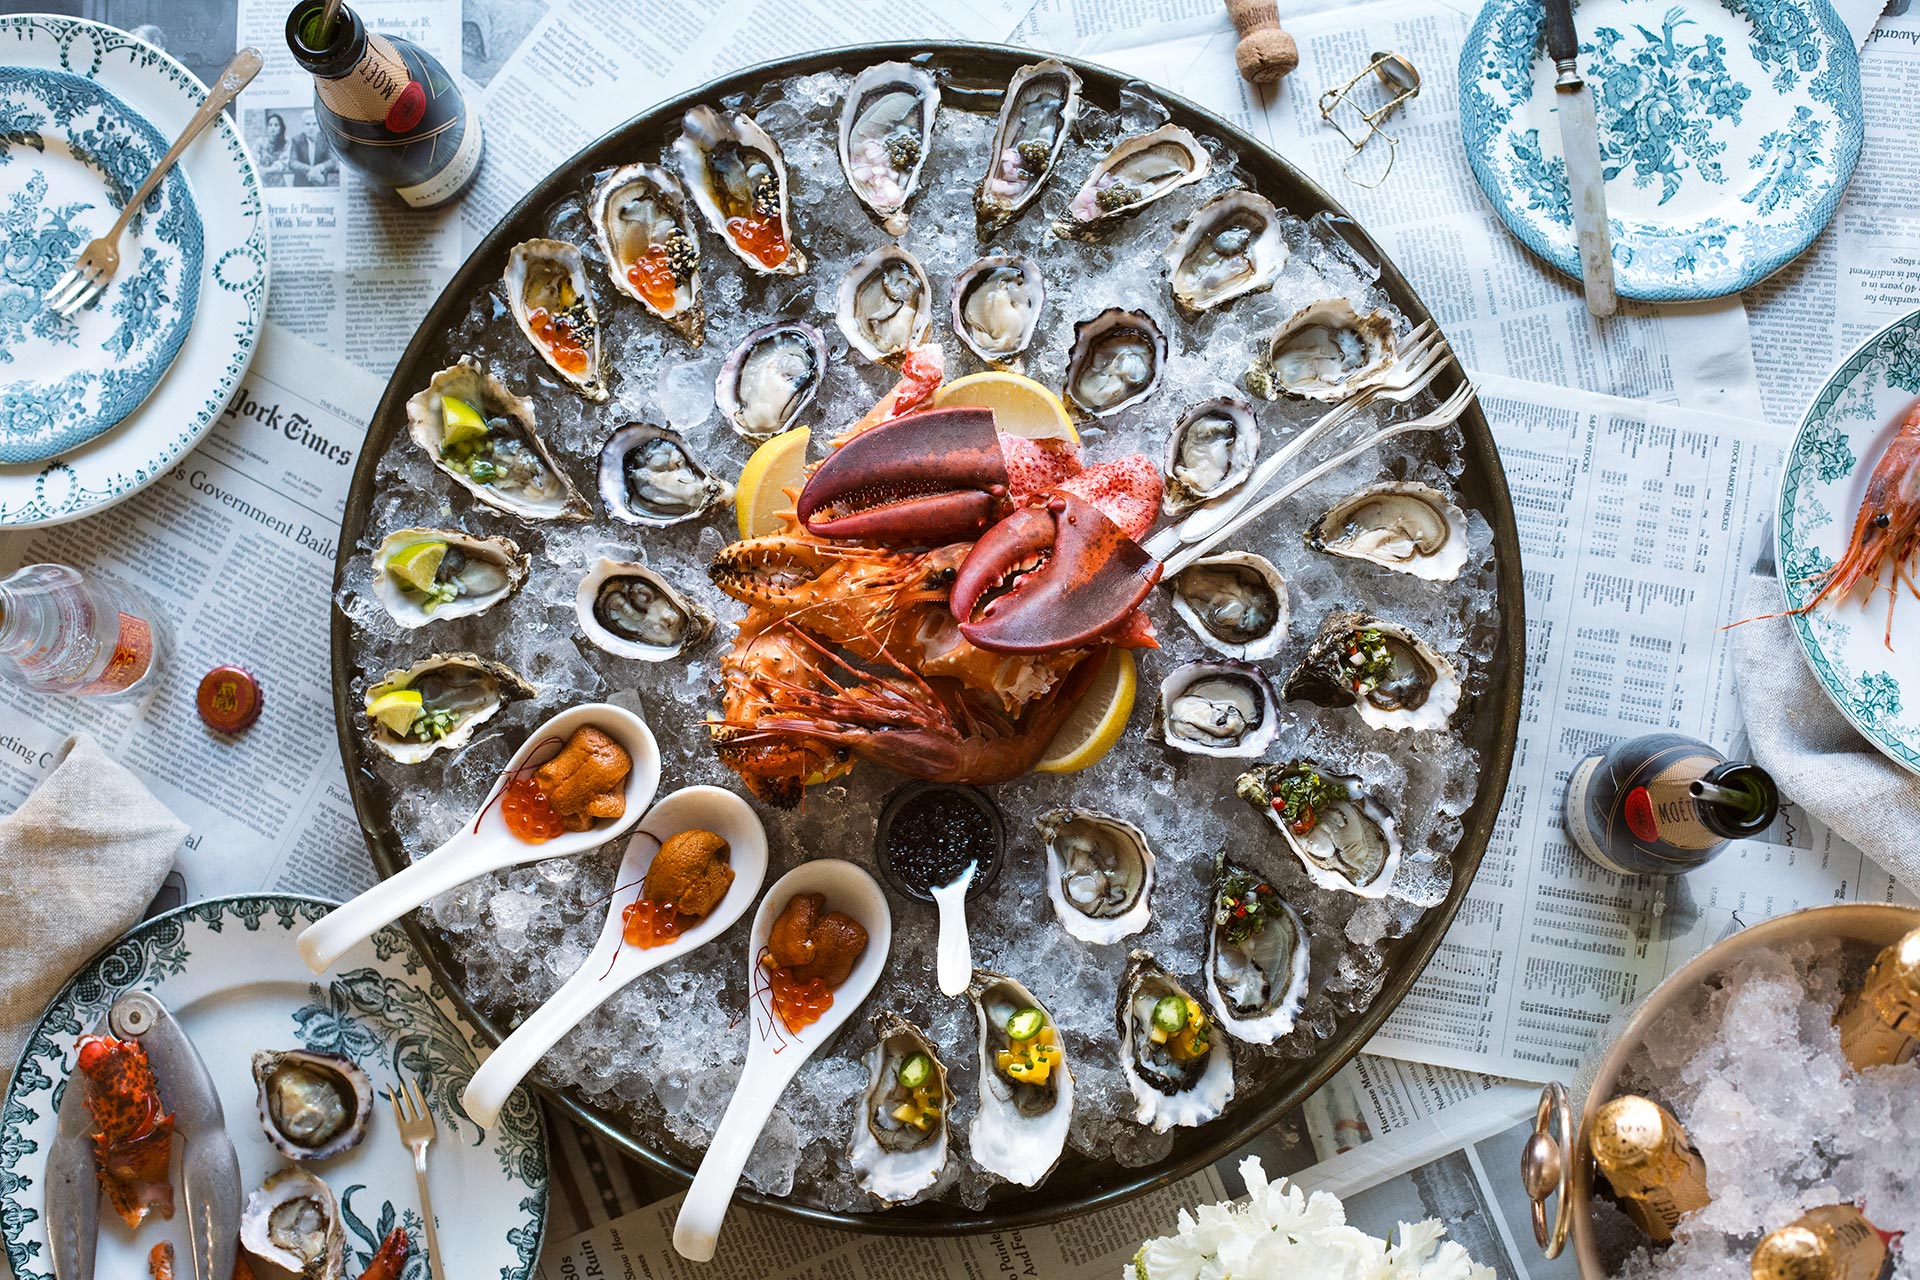 How To Throw A Raw Seafood Party | HonestlyYUM (honestlyyum.com)